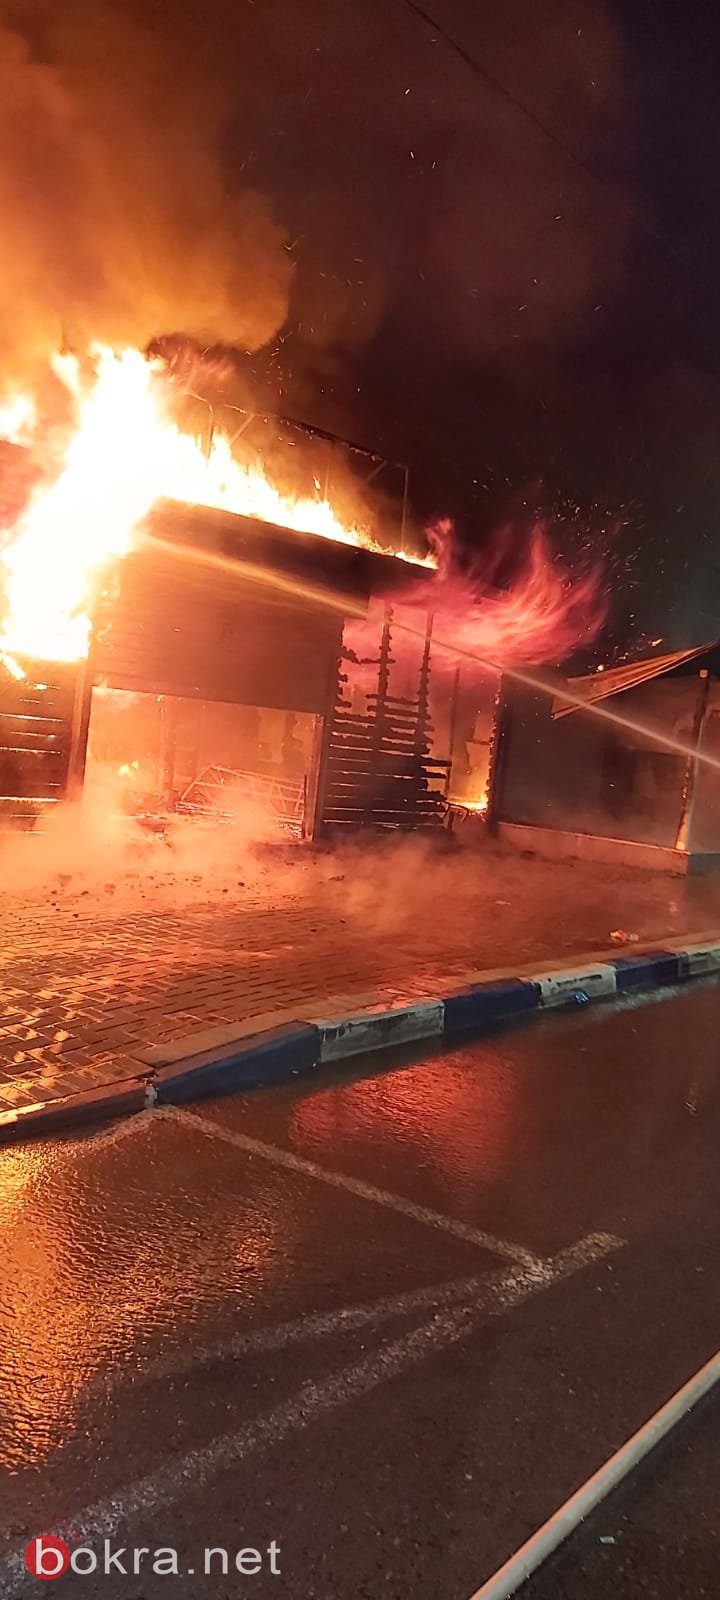 باقة الغربية: اندلاع حريق هائل في محل تجاري-1